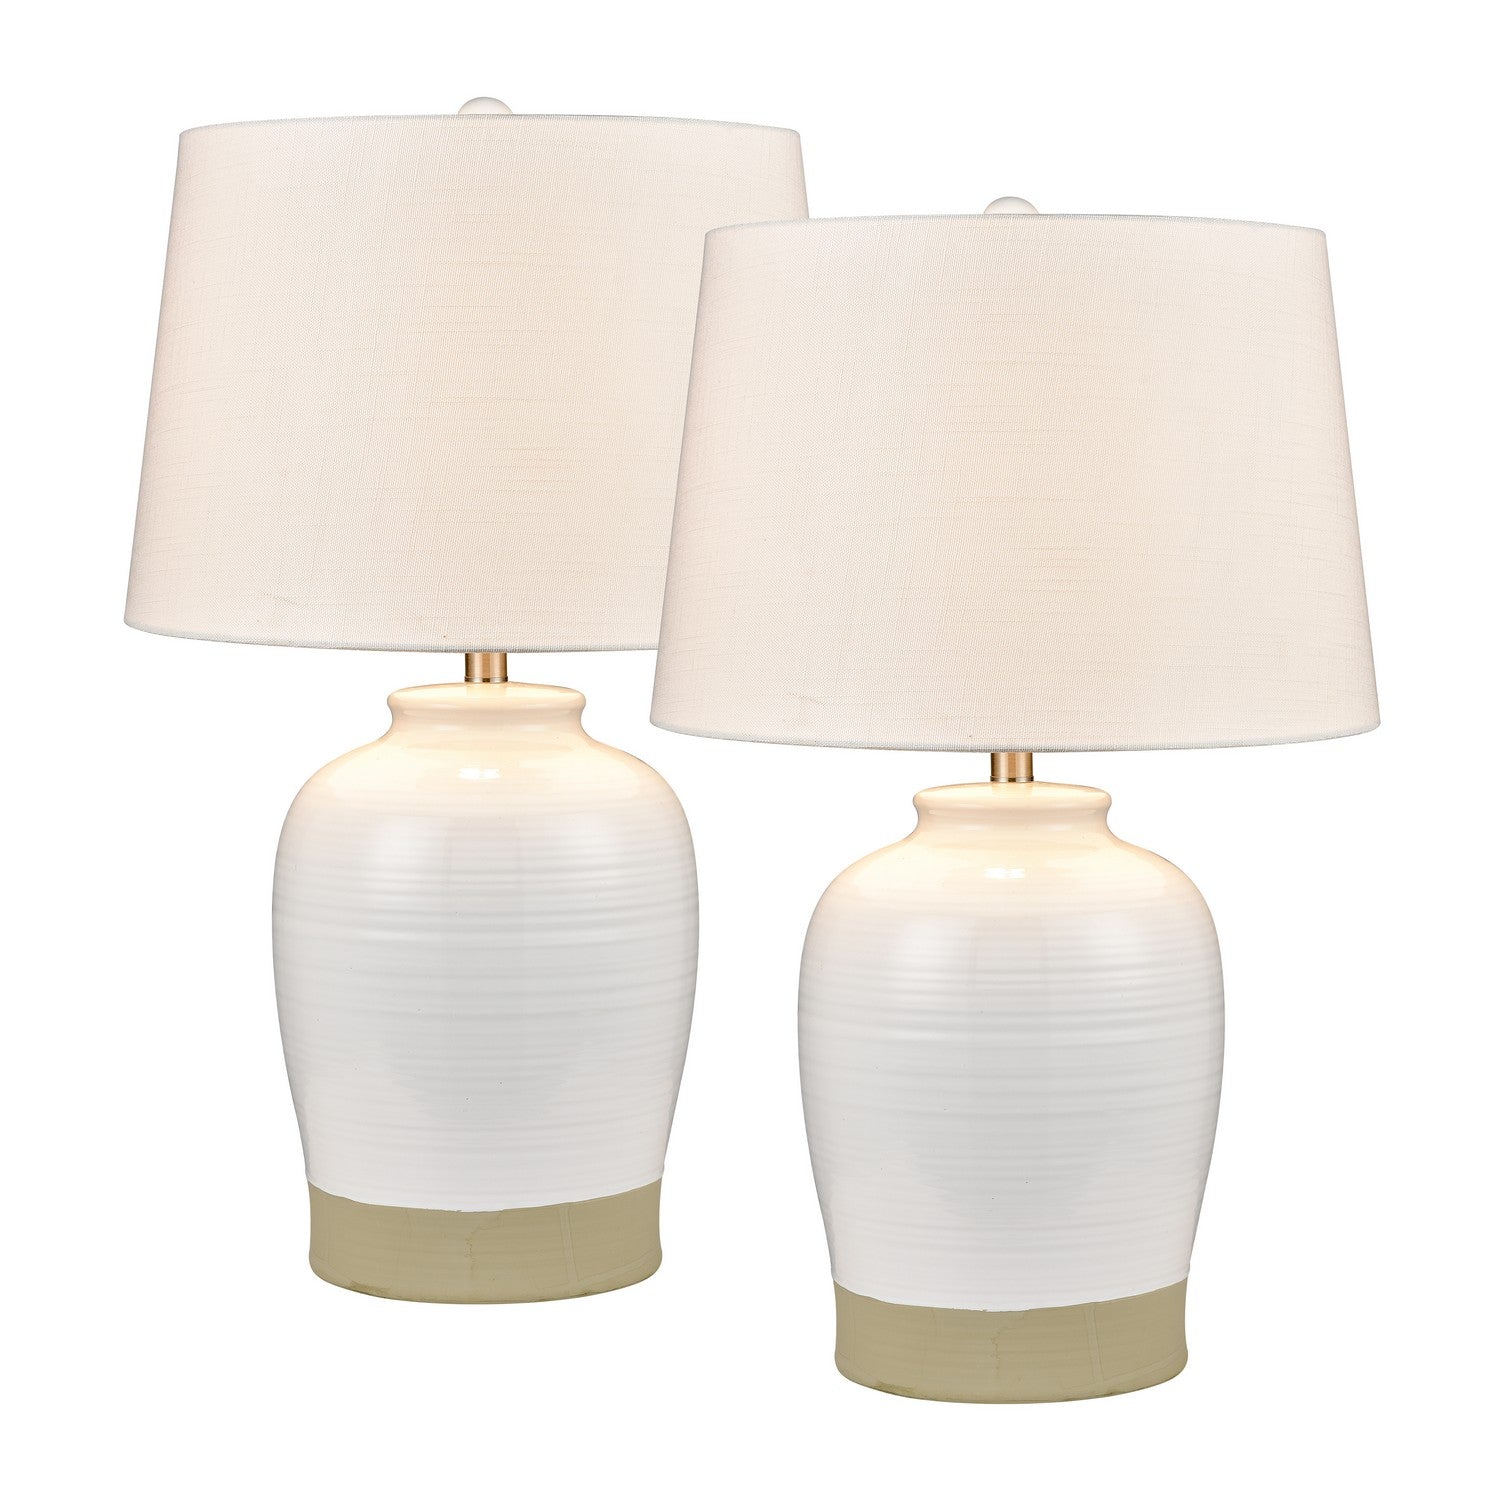 ELK Home - S0019-9468/S2 - One Light Table Lamp - Set of 2 - Peli - White